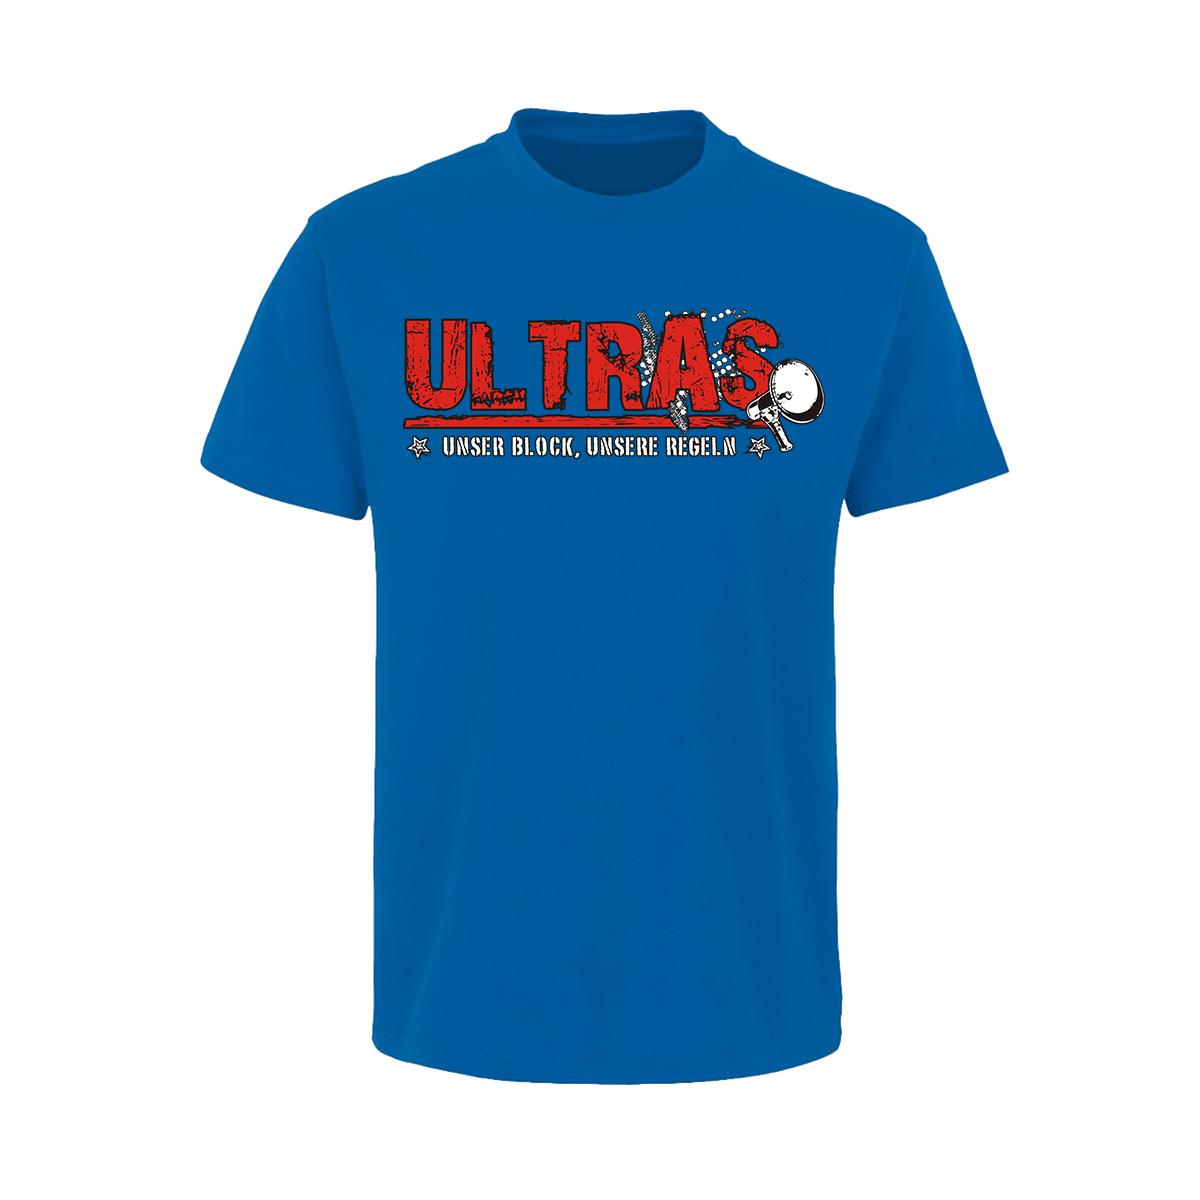 Ultras - Unser Block unsere Regeln - Männer T-Shirt - blau